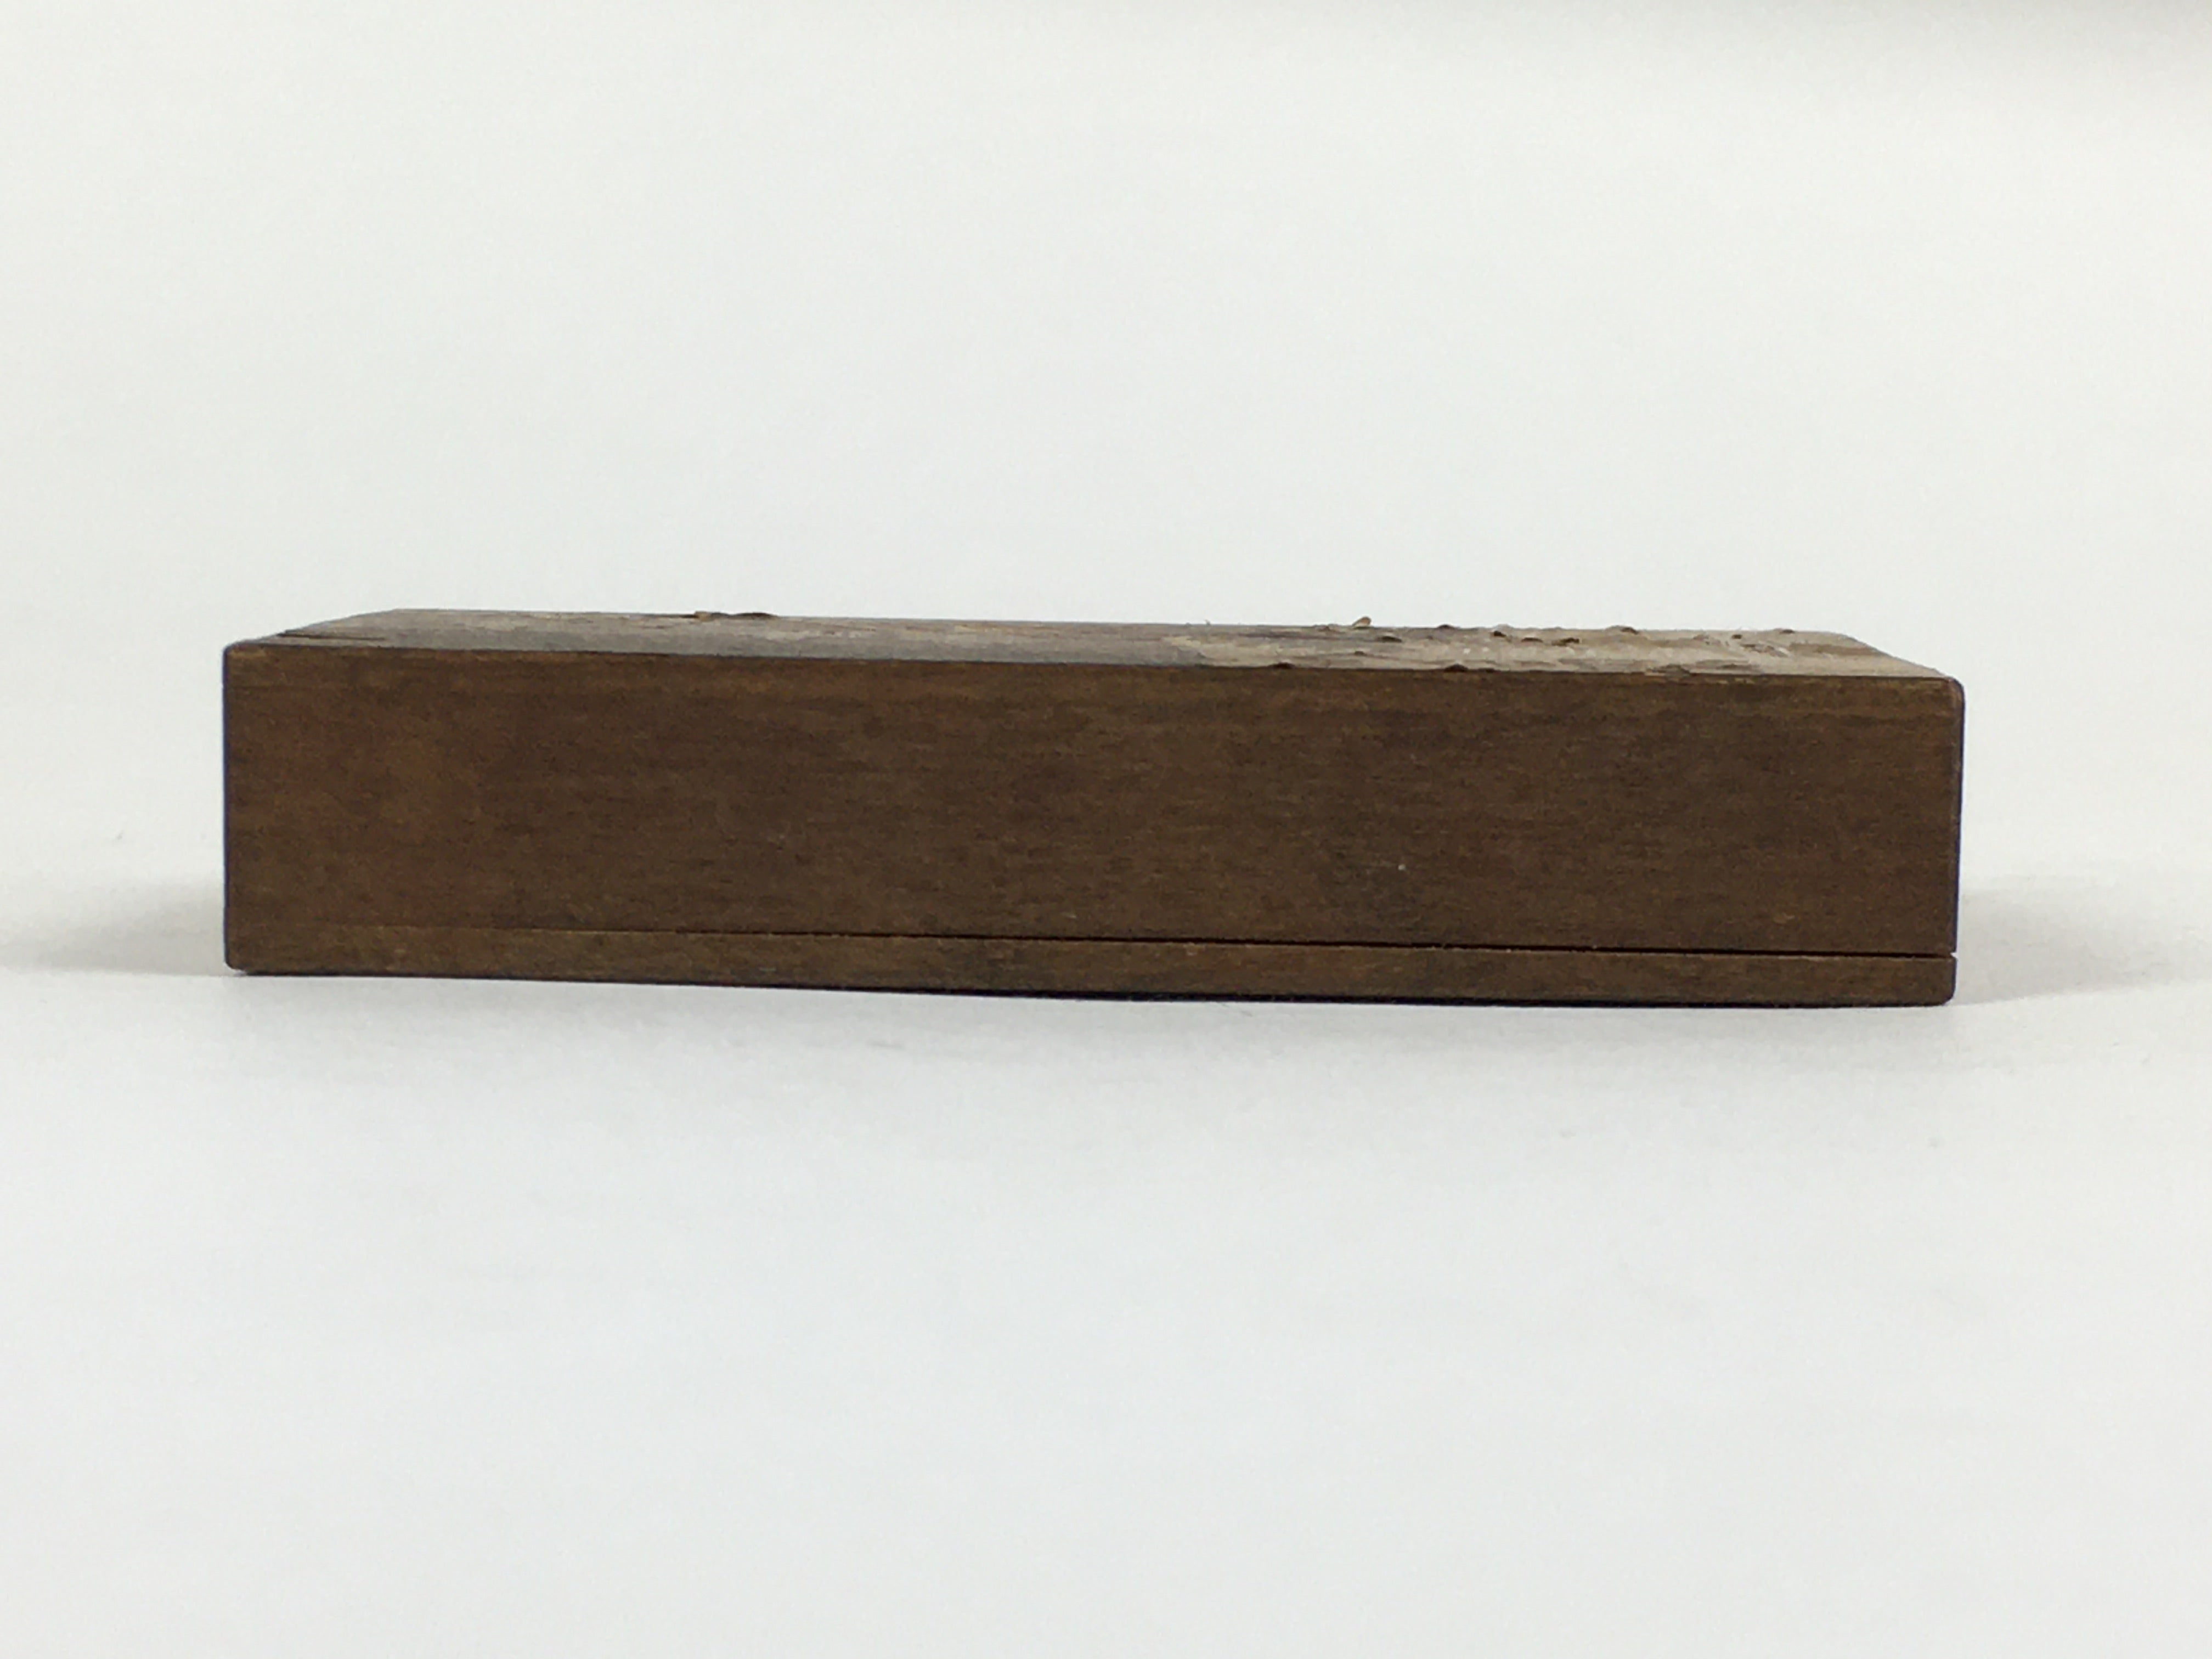 Japanese Wooden Match Box Vtg Handmade Woodworking Brown JK352